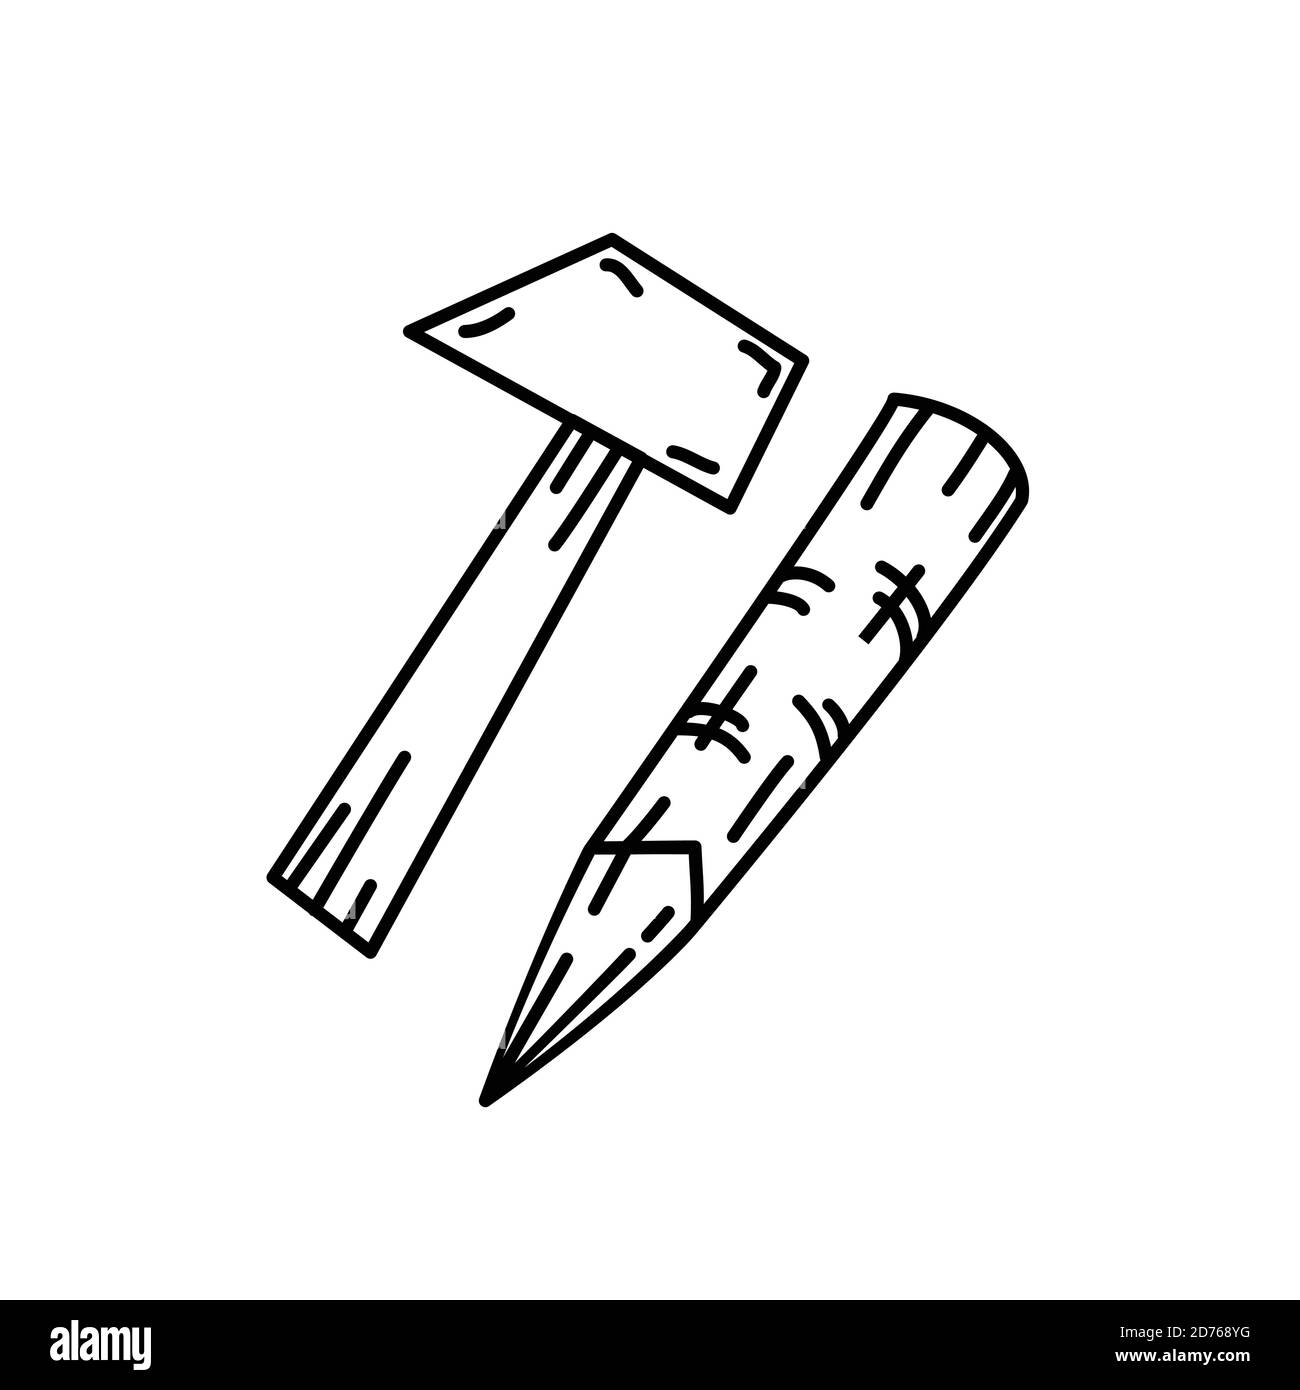 Hammer-Symbolvektor. Doodle Hand gezeichnet oder Black Outline Icon Stil Stock Vektor